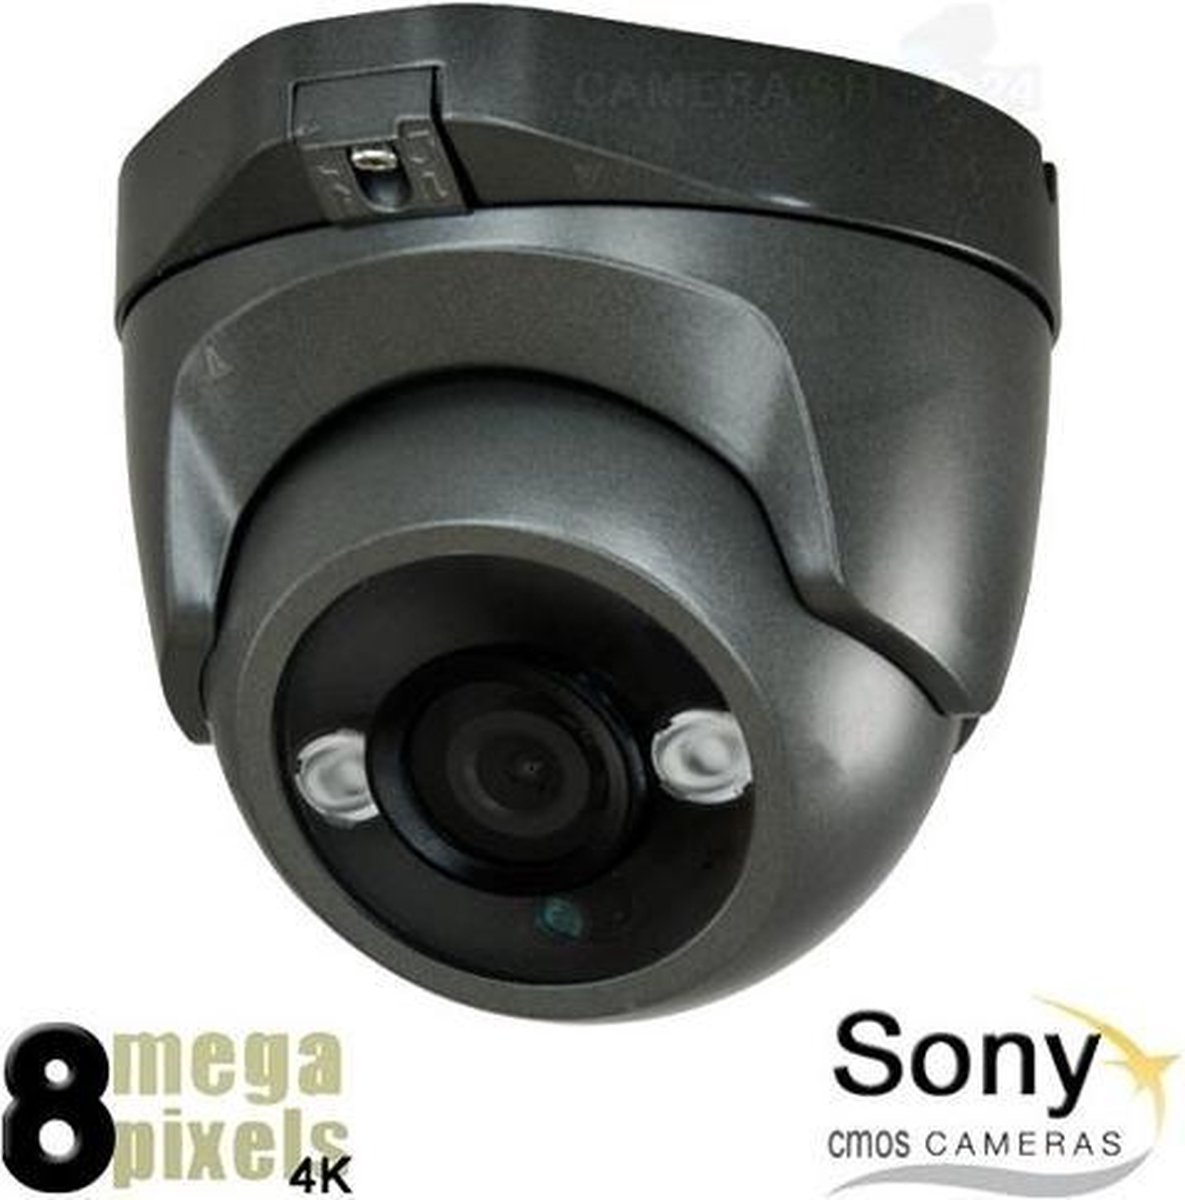 Beveiligingscamera - 8 megapixel 4K - 4in1 Camera - 30m Nachtzicht - 3.6mm lens - Uitmuntende Camerabeelden - Sony Starvis Beeldsensor - Binnen & Buiten